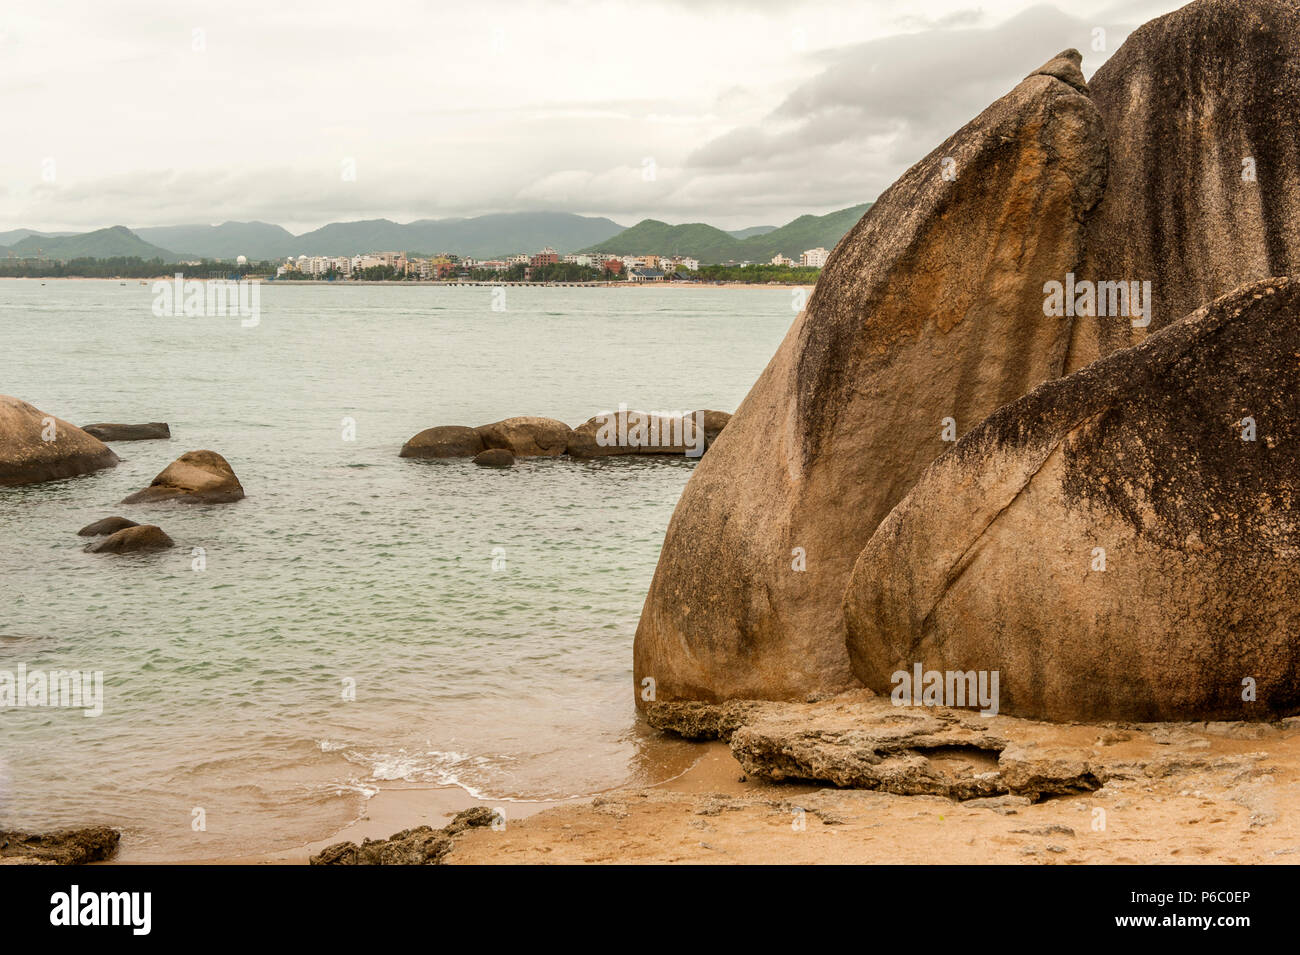 La baie de Tianya Haijaio points à la Chinoise 'fin du monde'. Elle est bordée par d'énormes rochers de granit. Banque D'Images